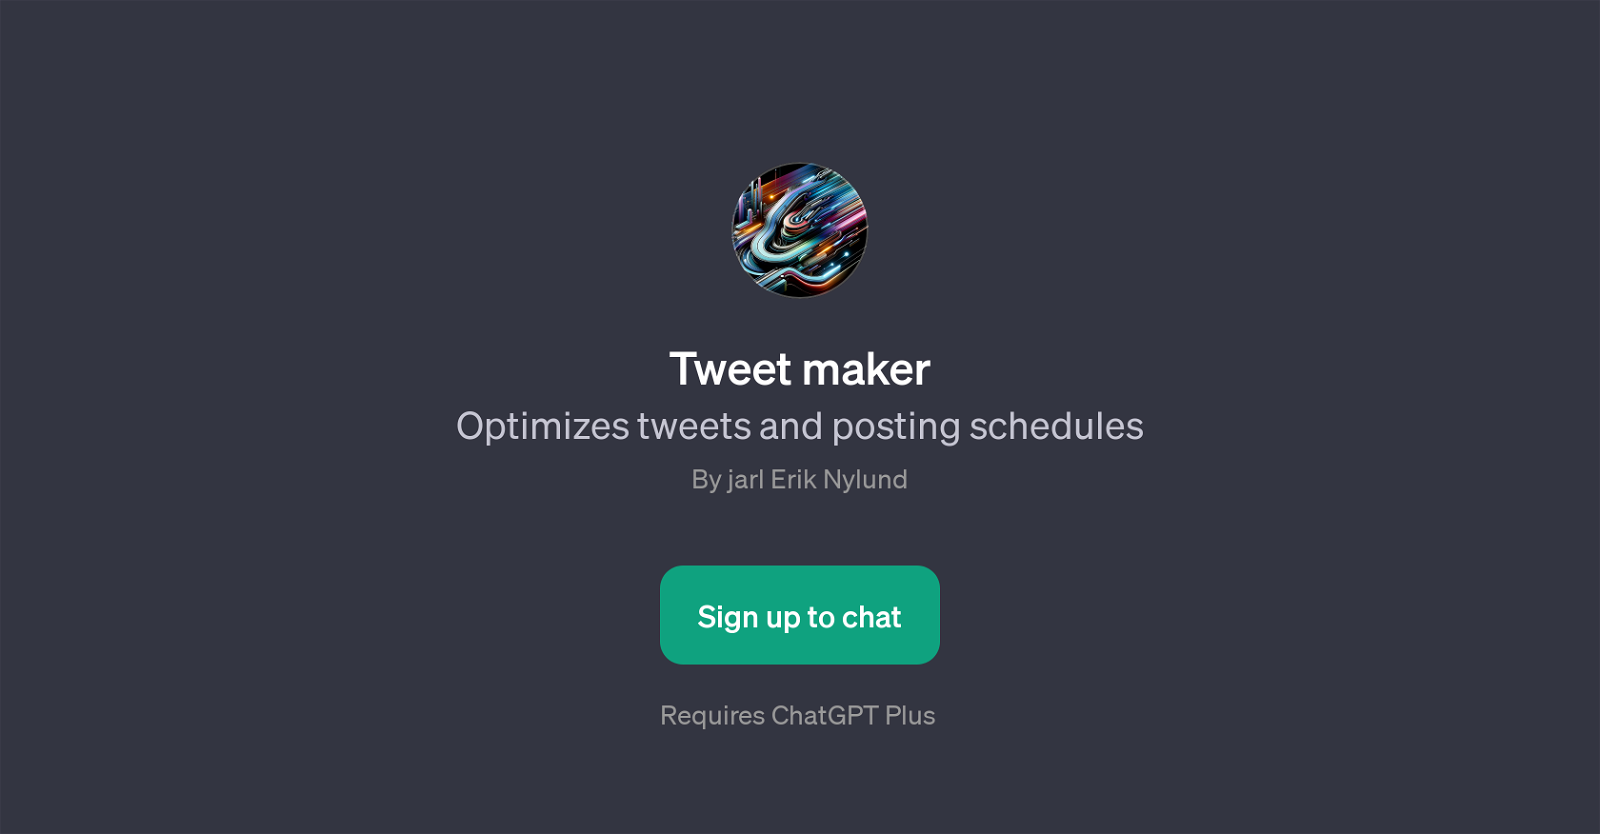 Tweet maker website